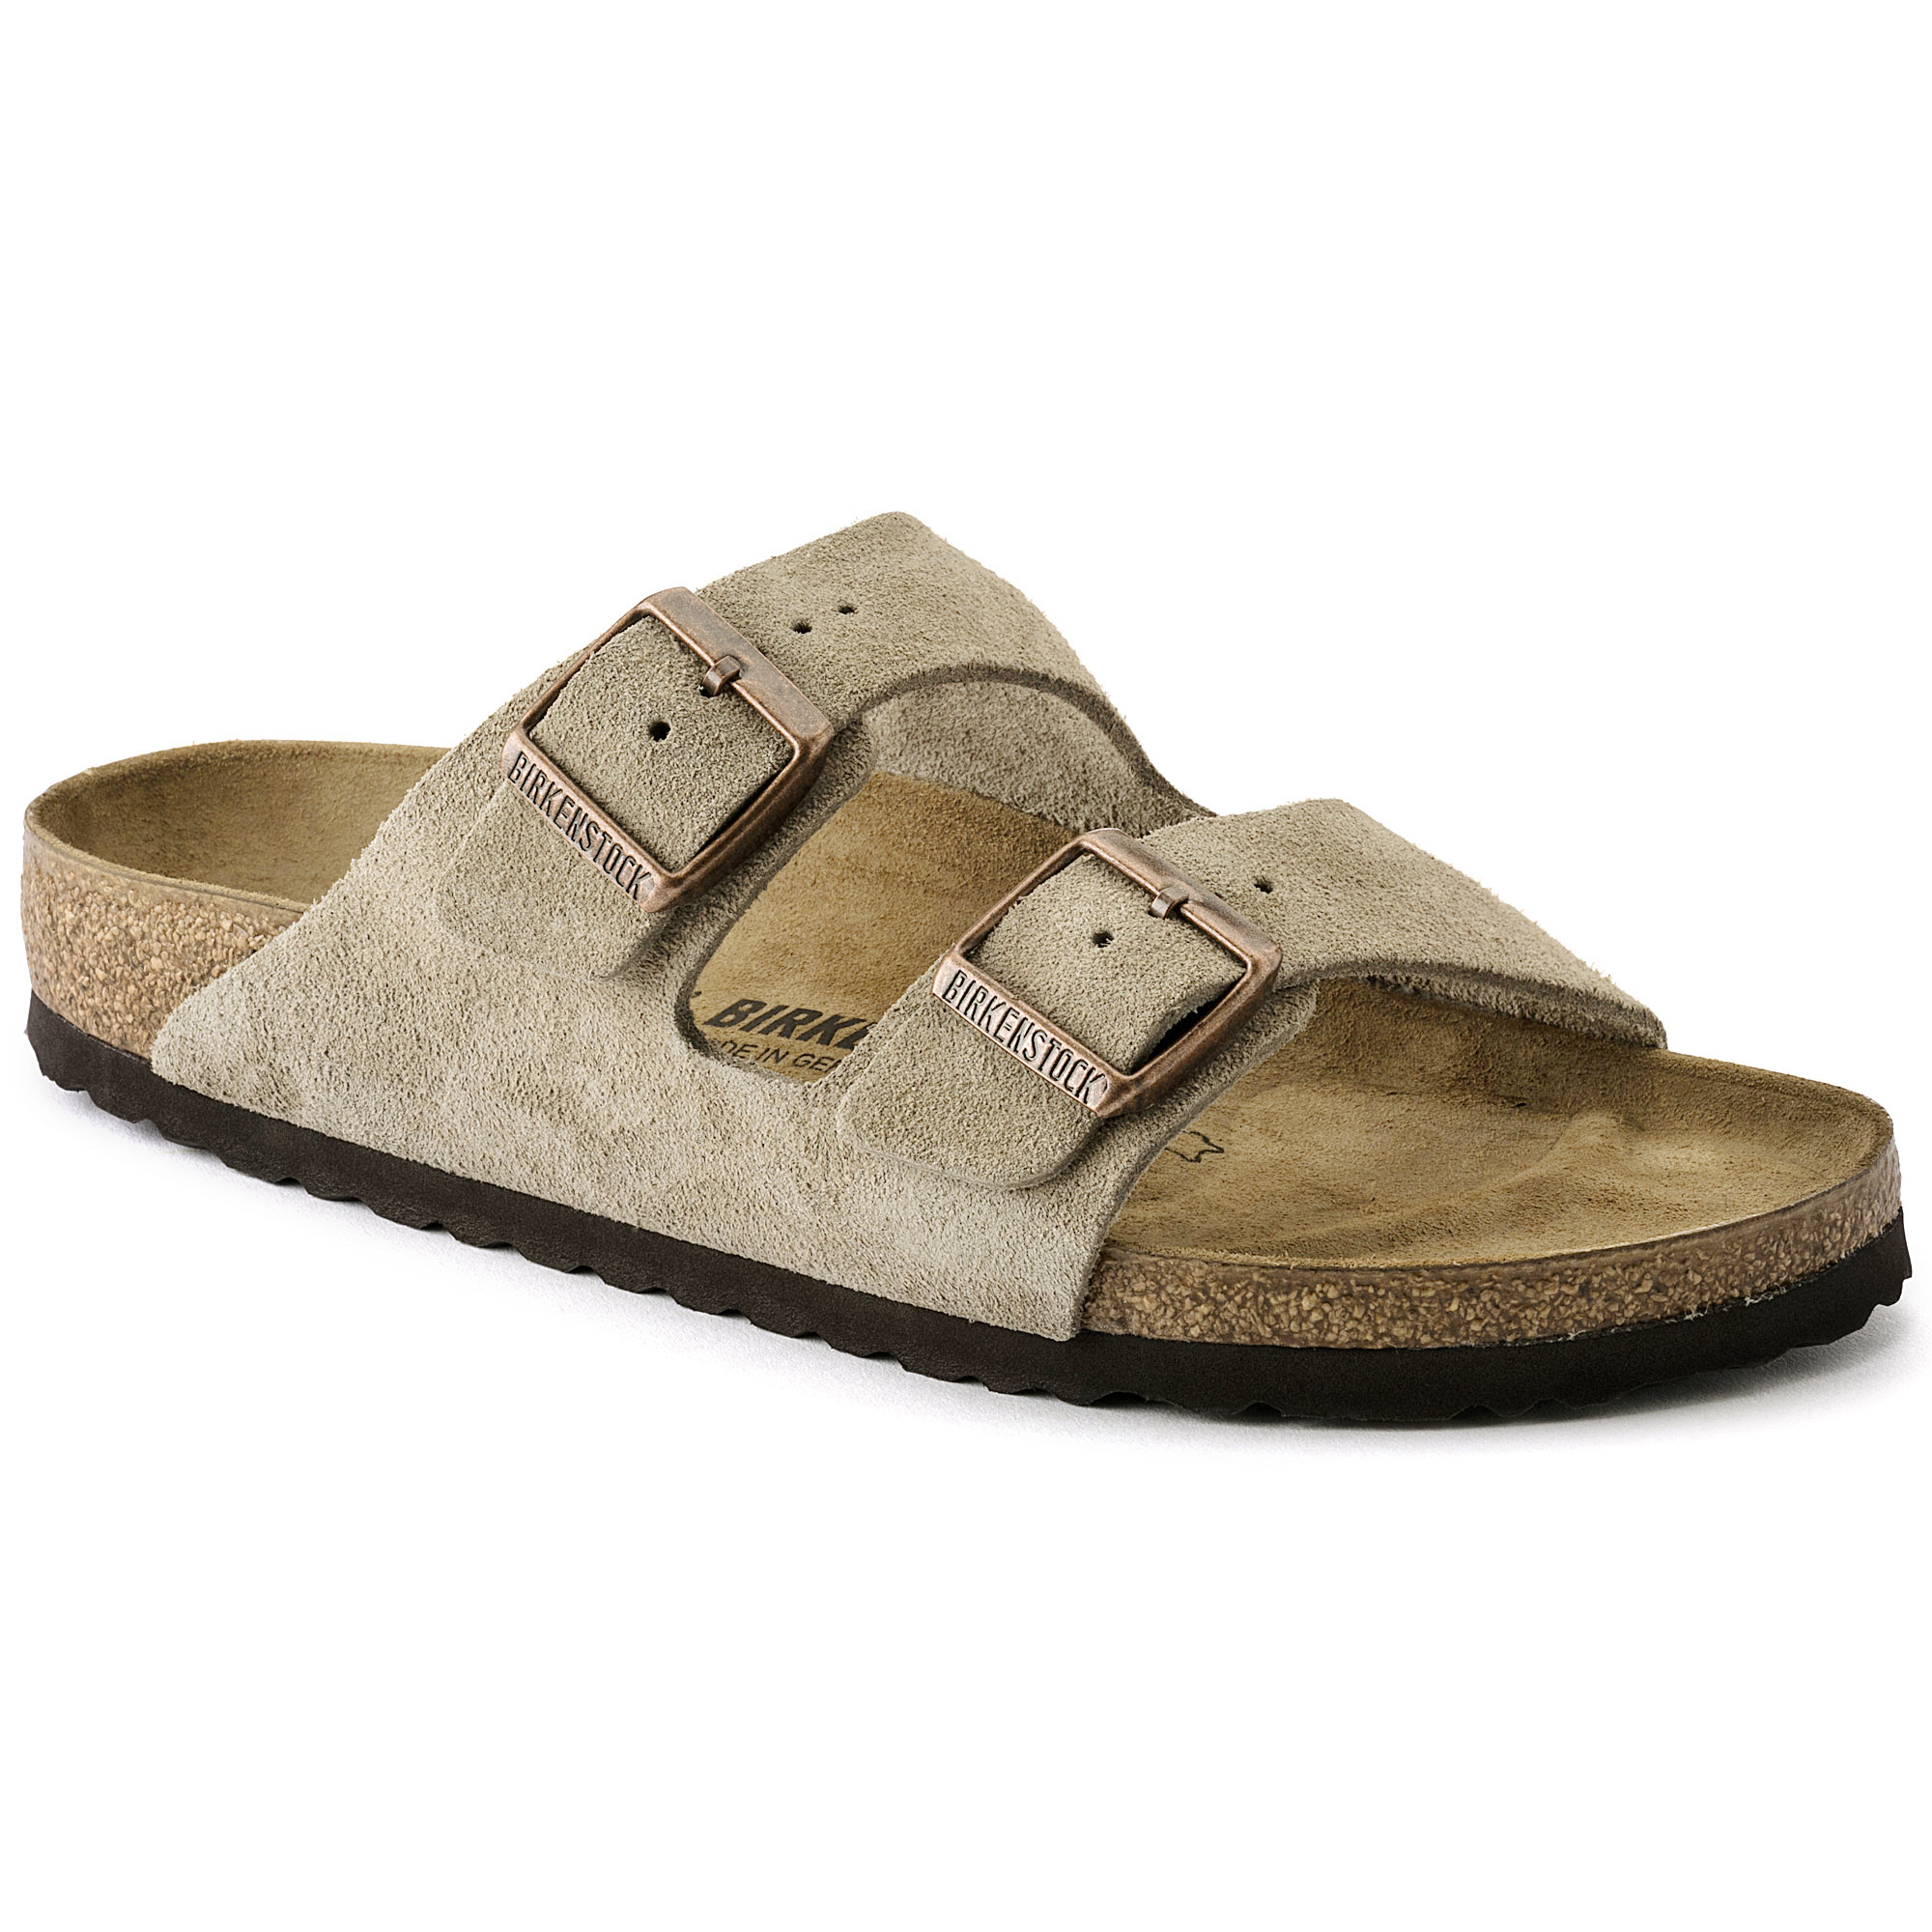 arizona birkenstock sandals